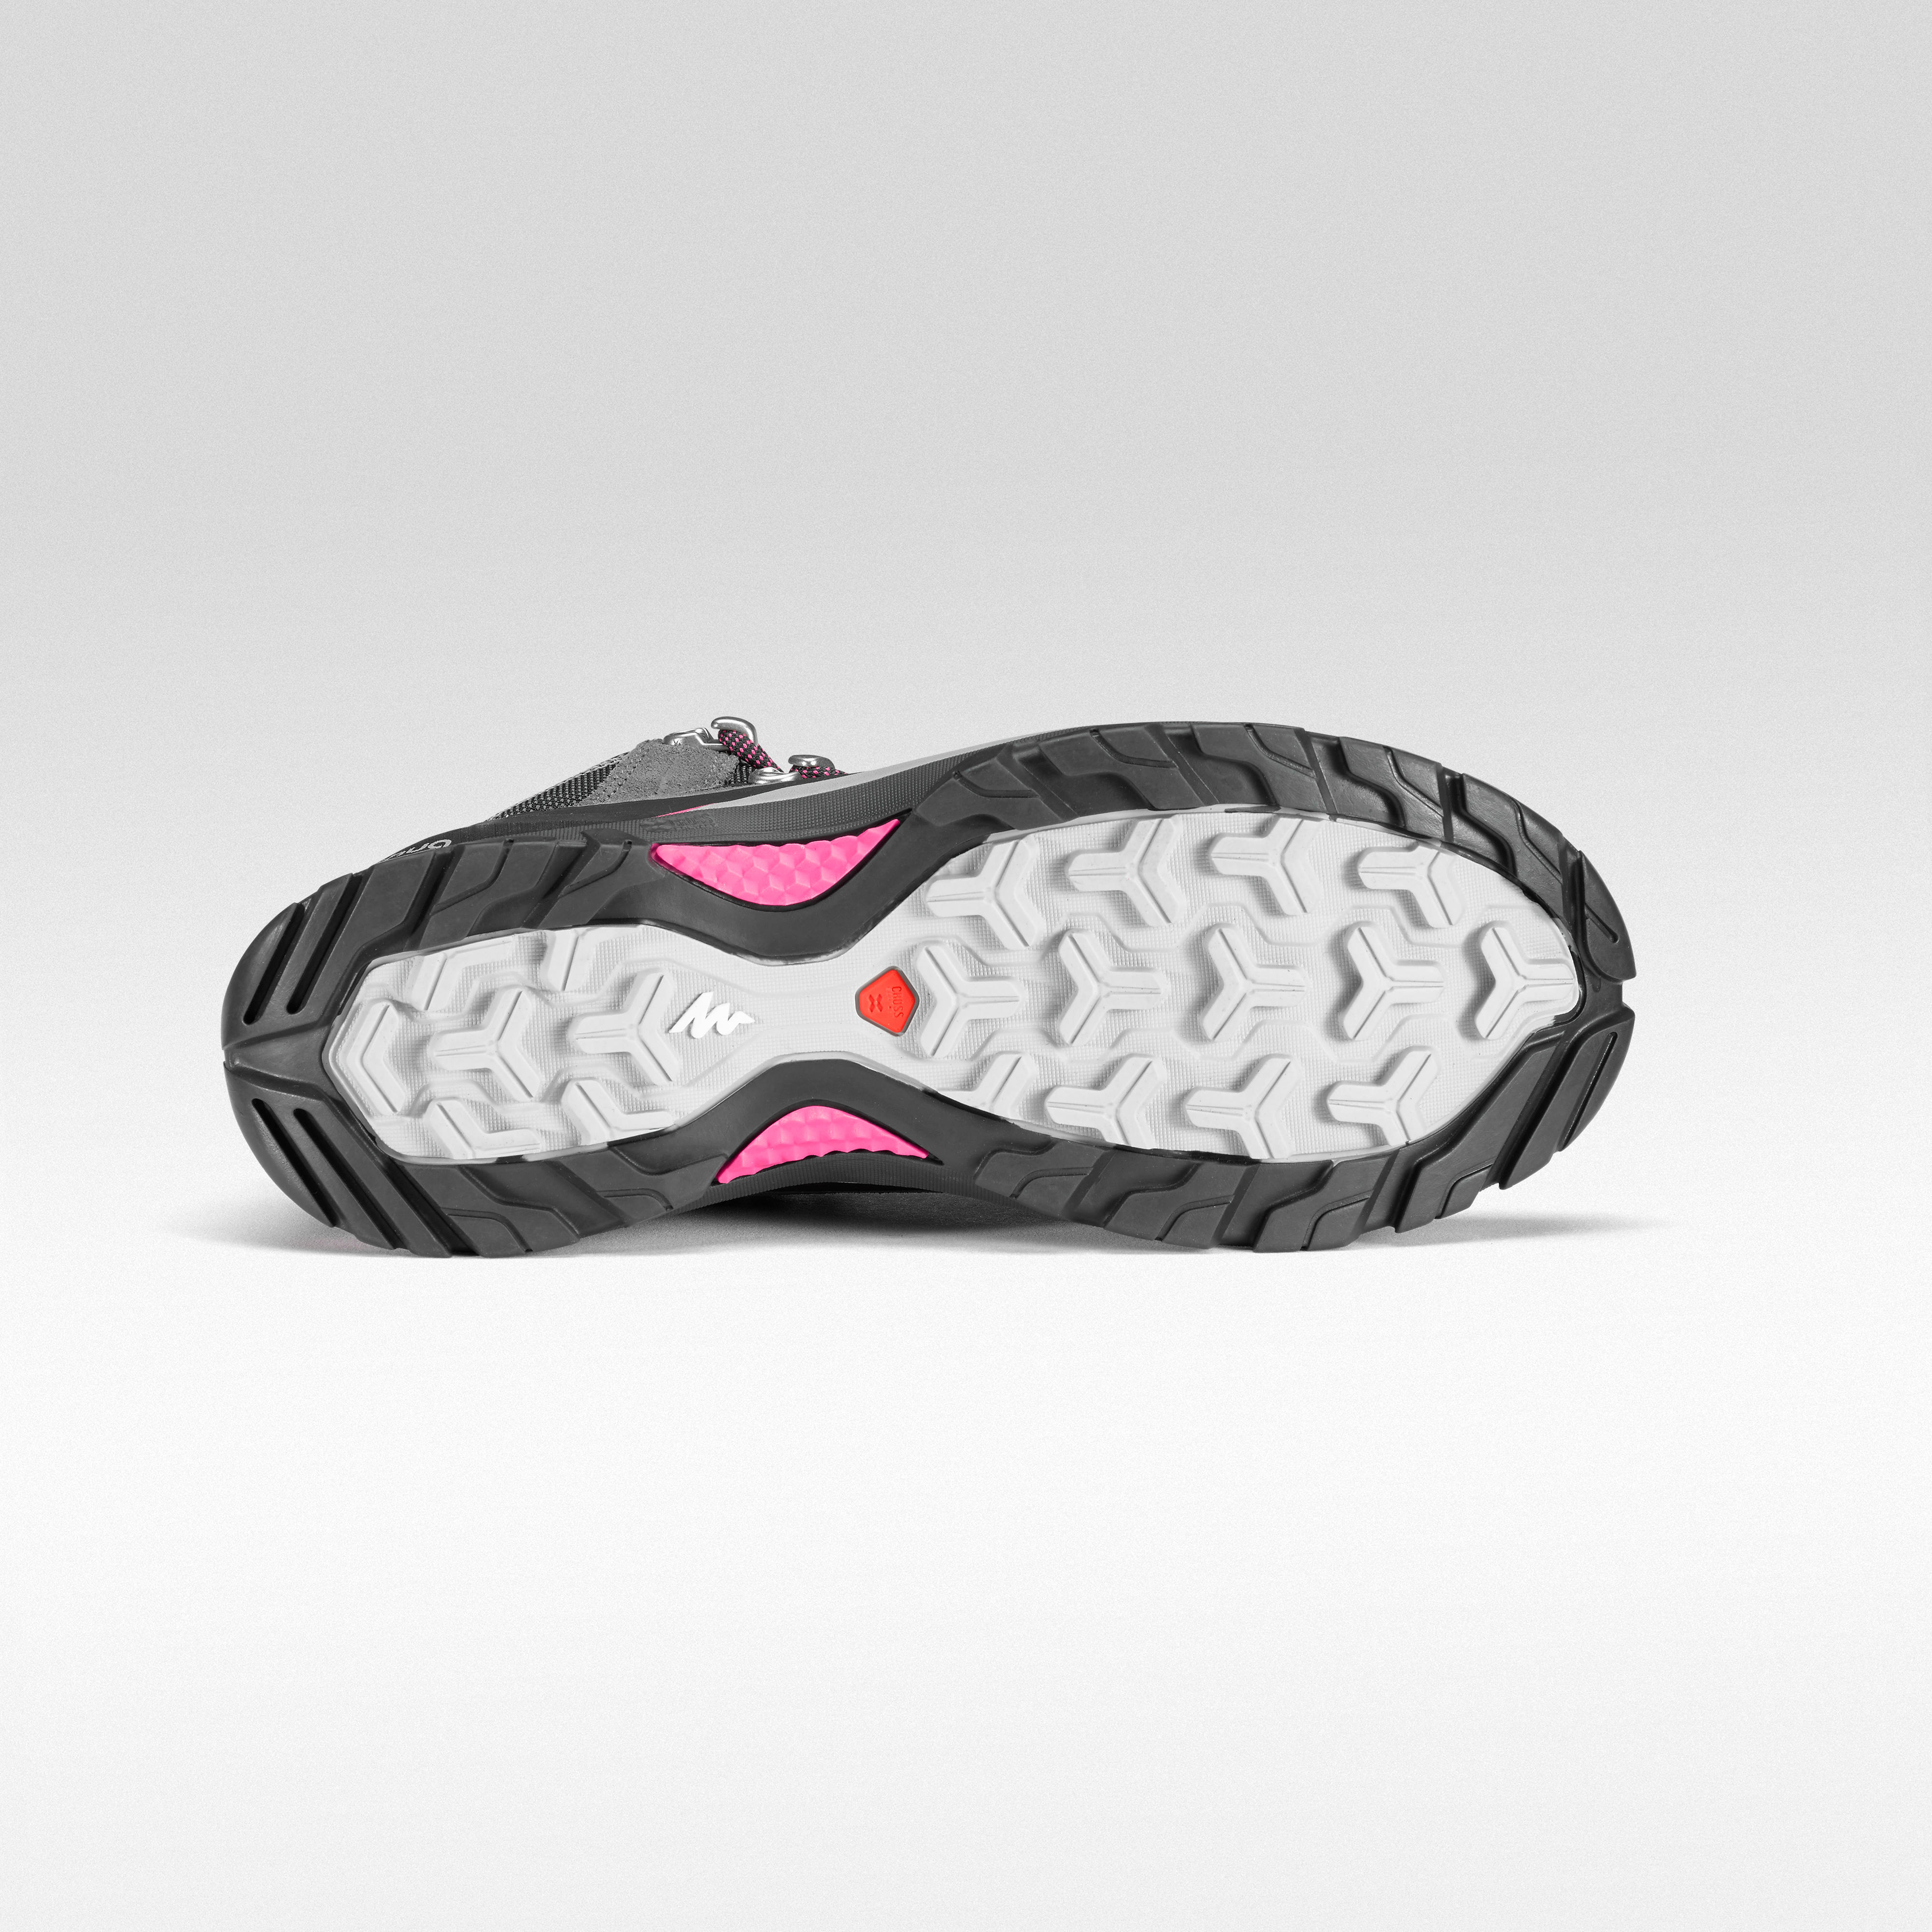 pink mountain bike shoes